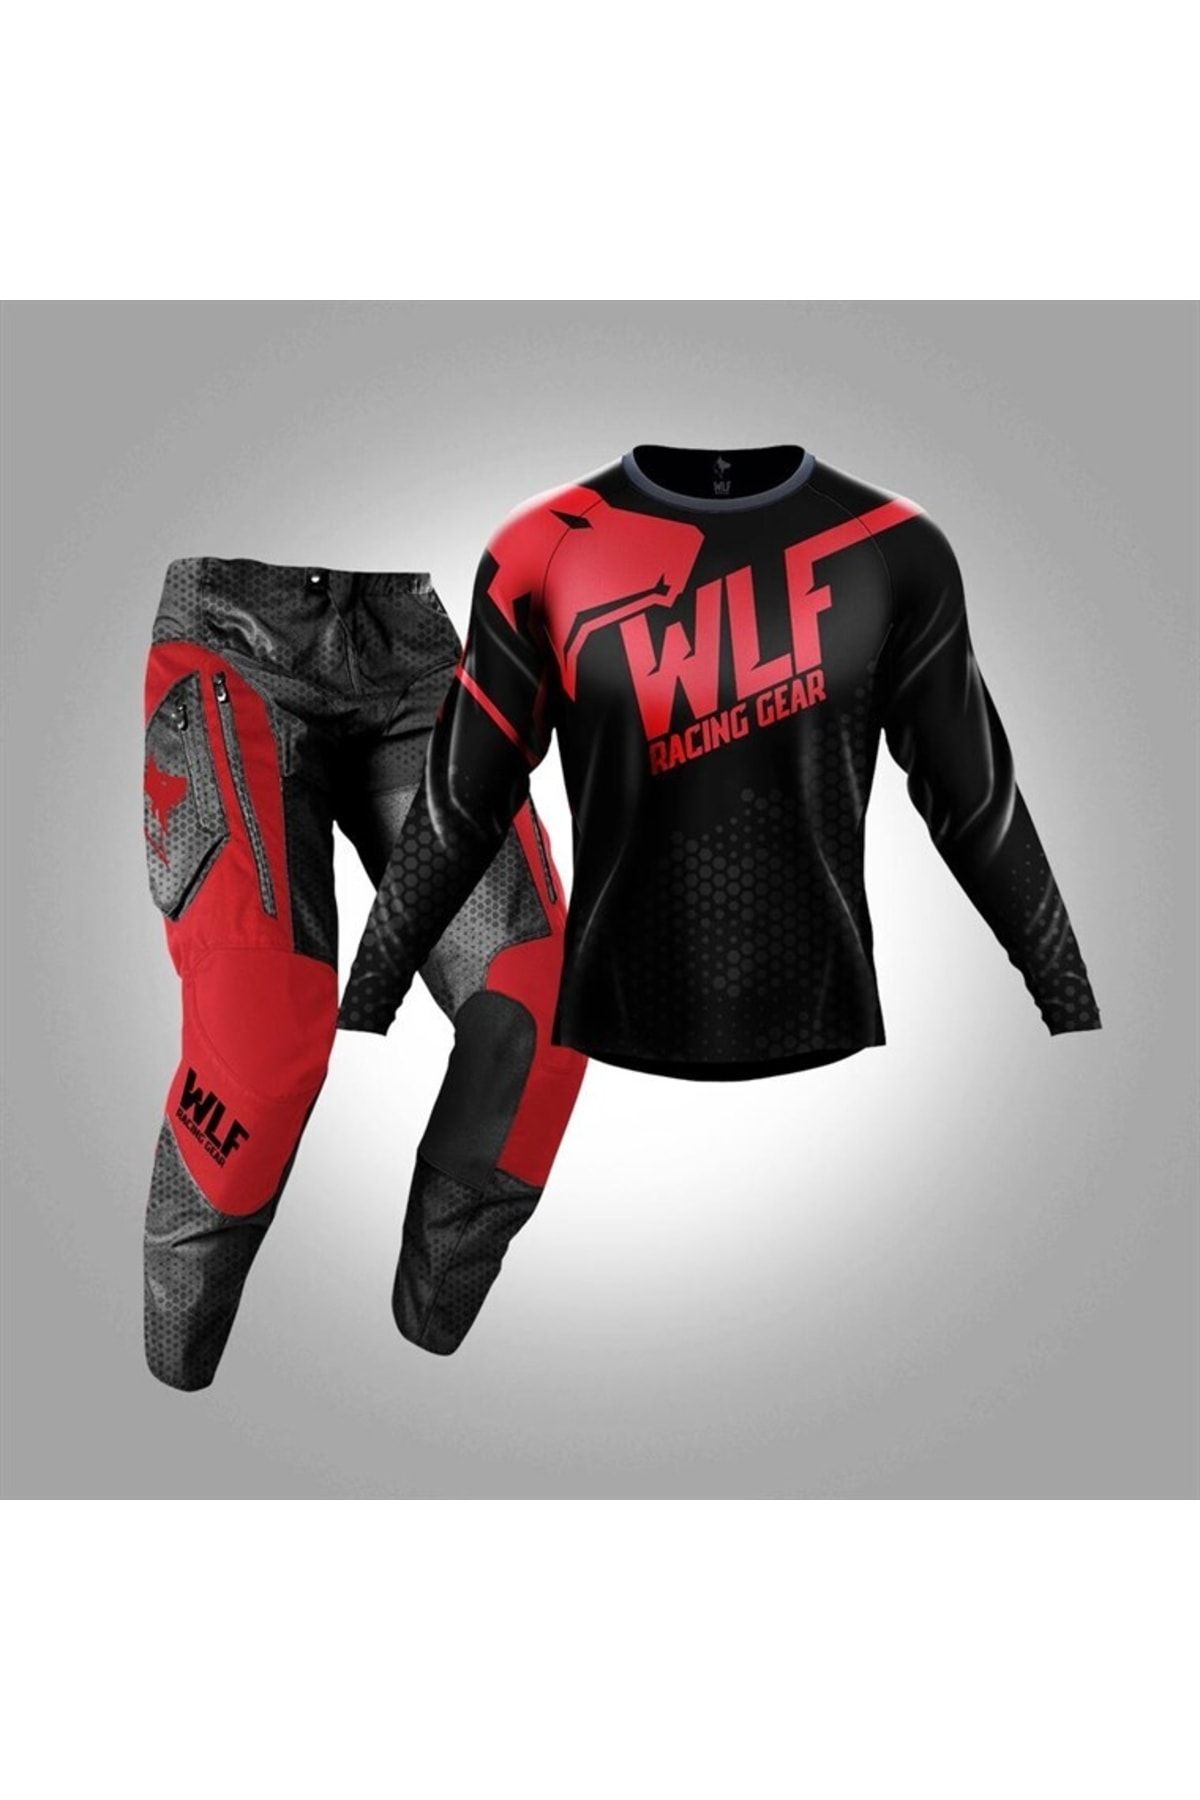 WOLF RACİNG Wlf Racıng X-aır Siyah-kırmızı Jersey Pantolon Takım